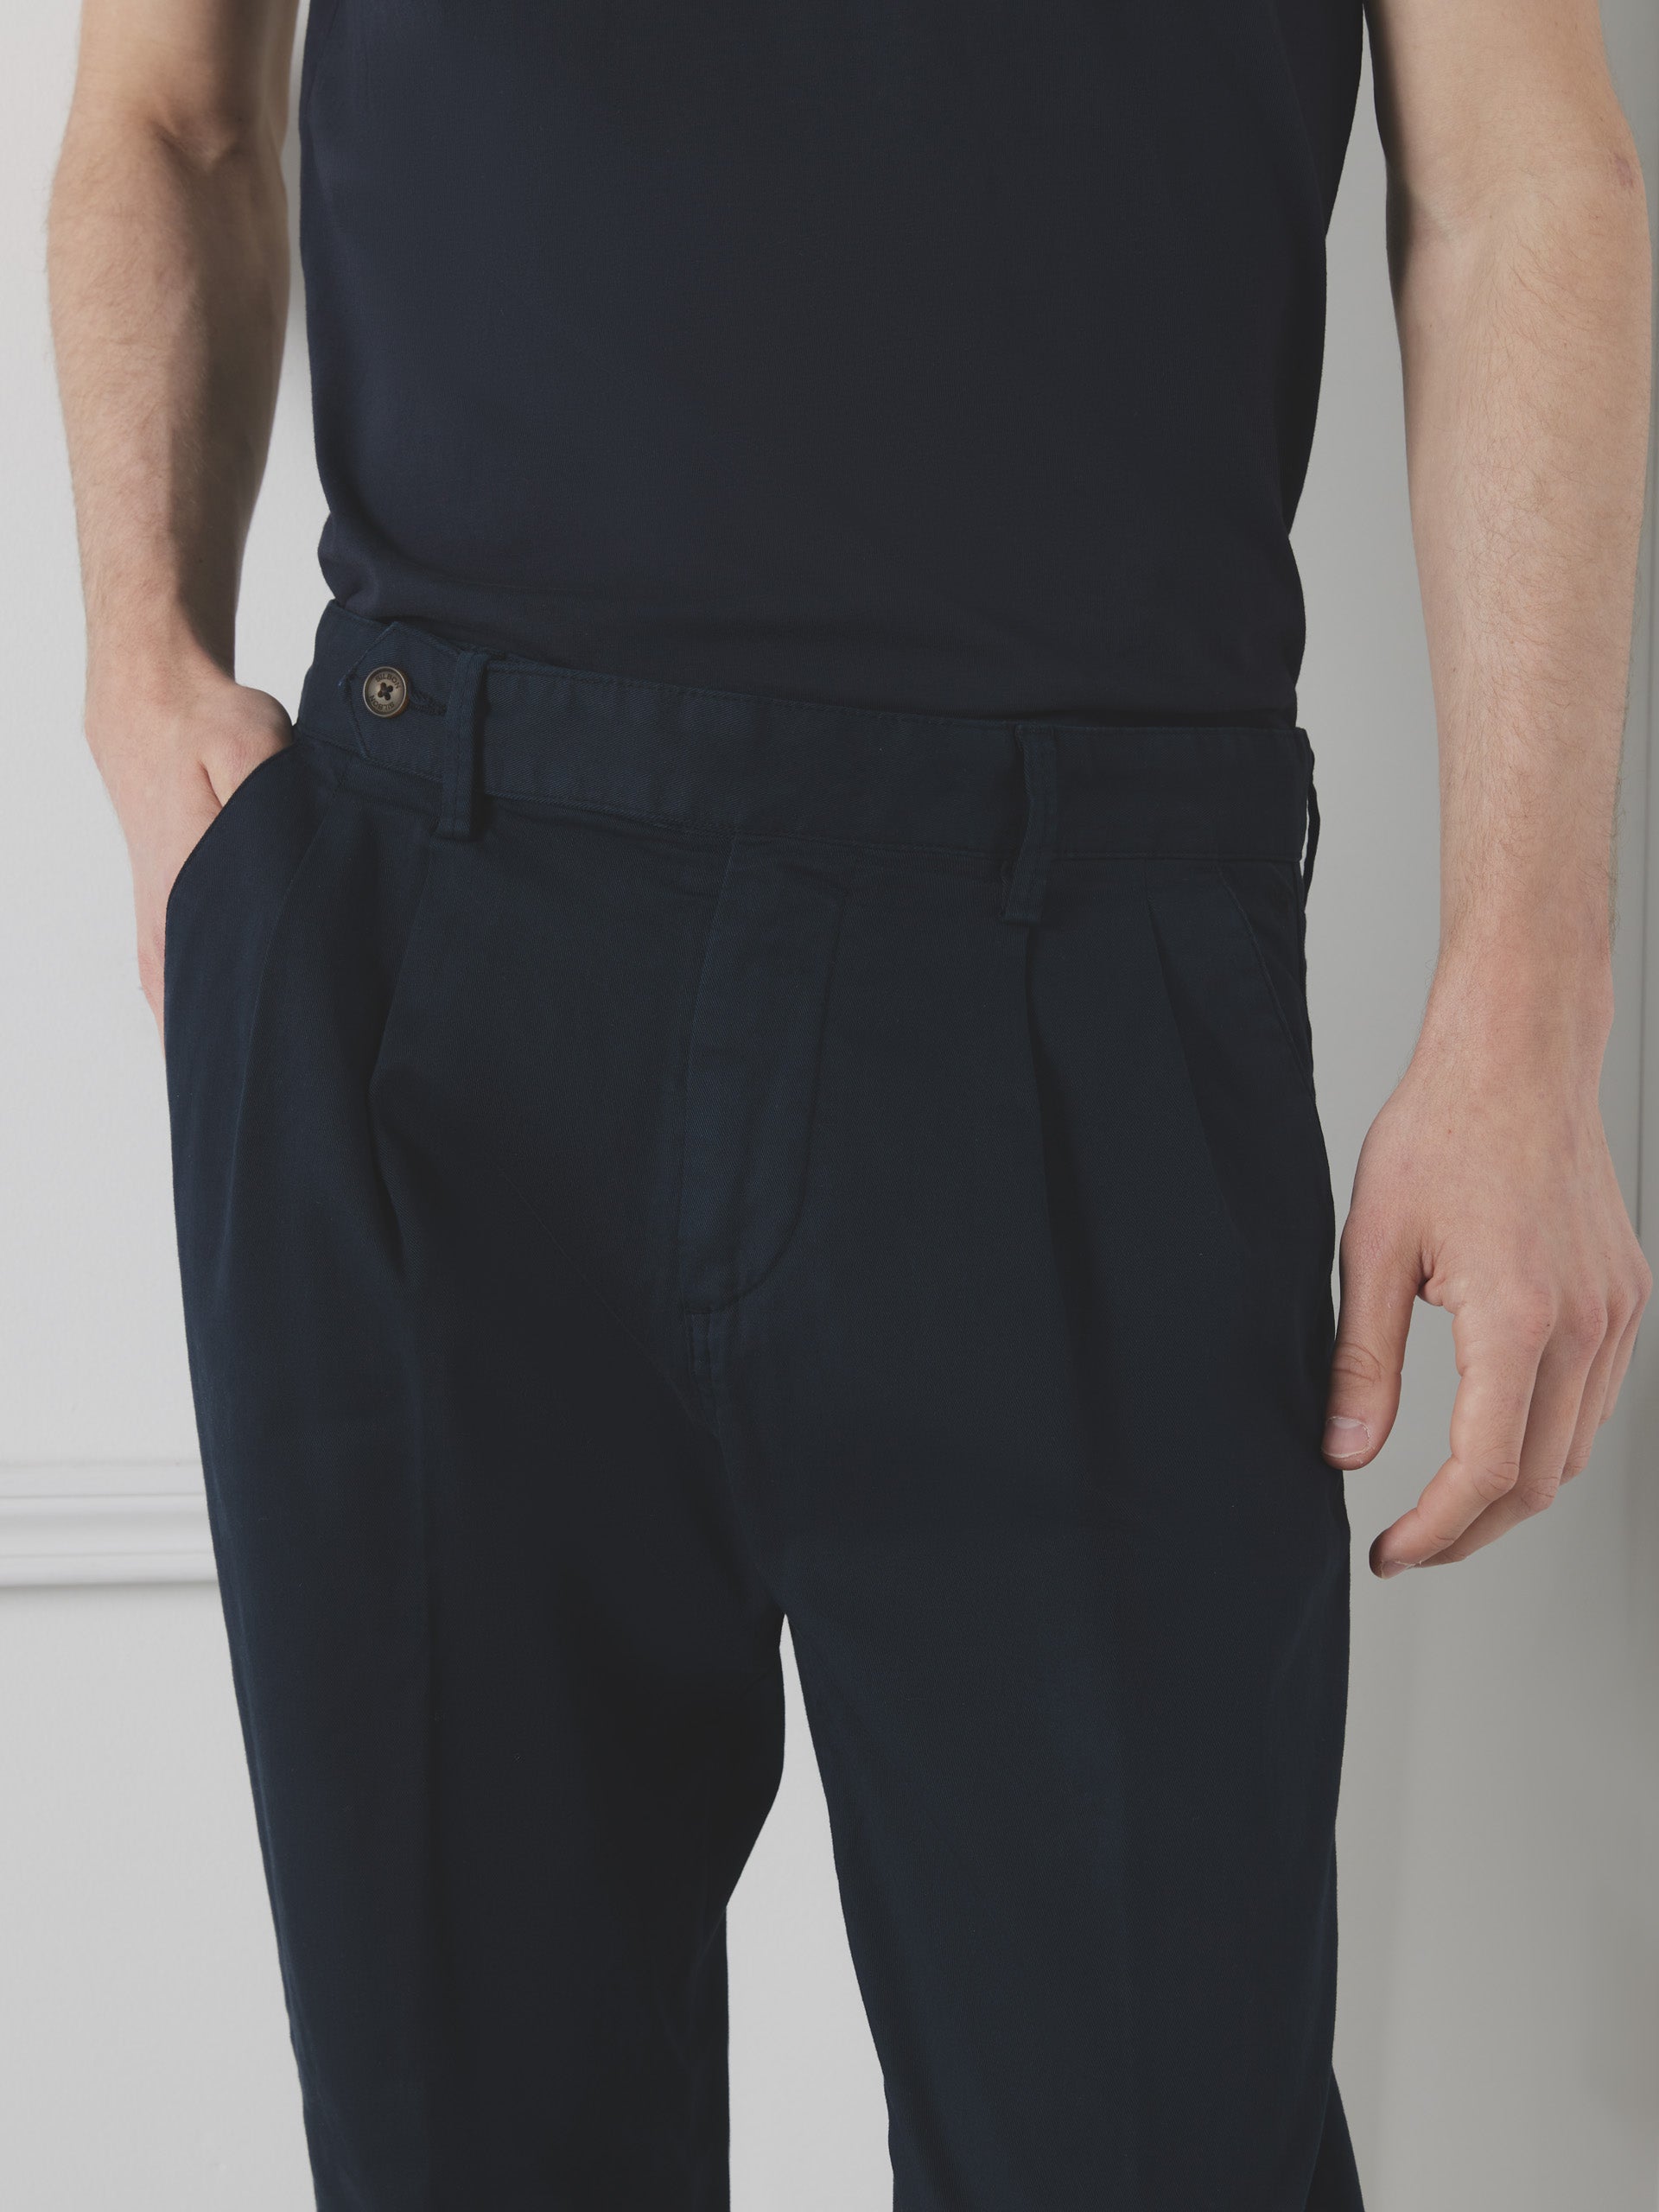 Silbon unique navy double pleat pants